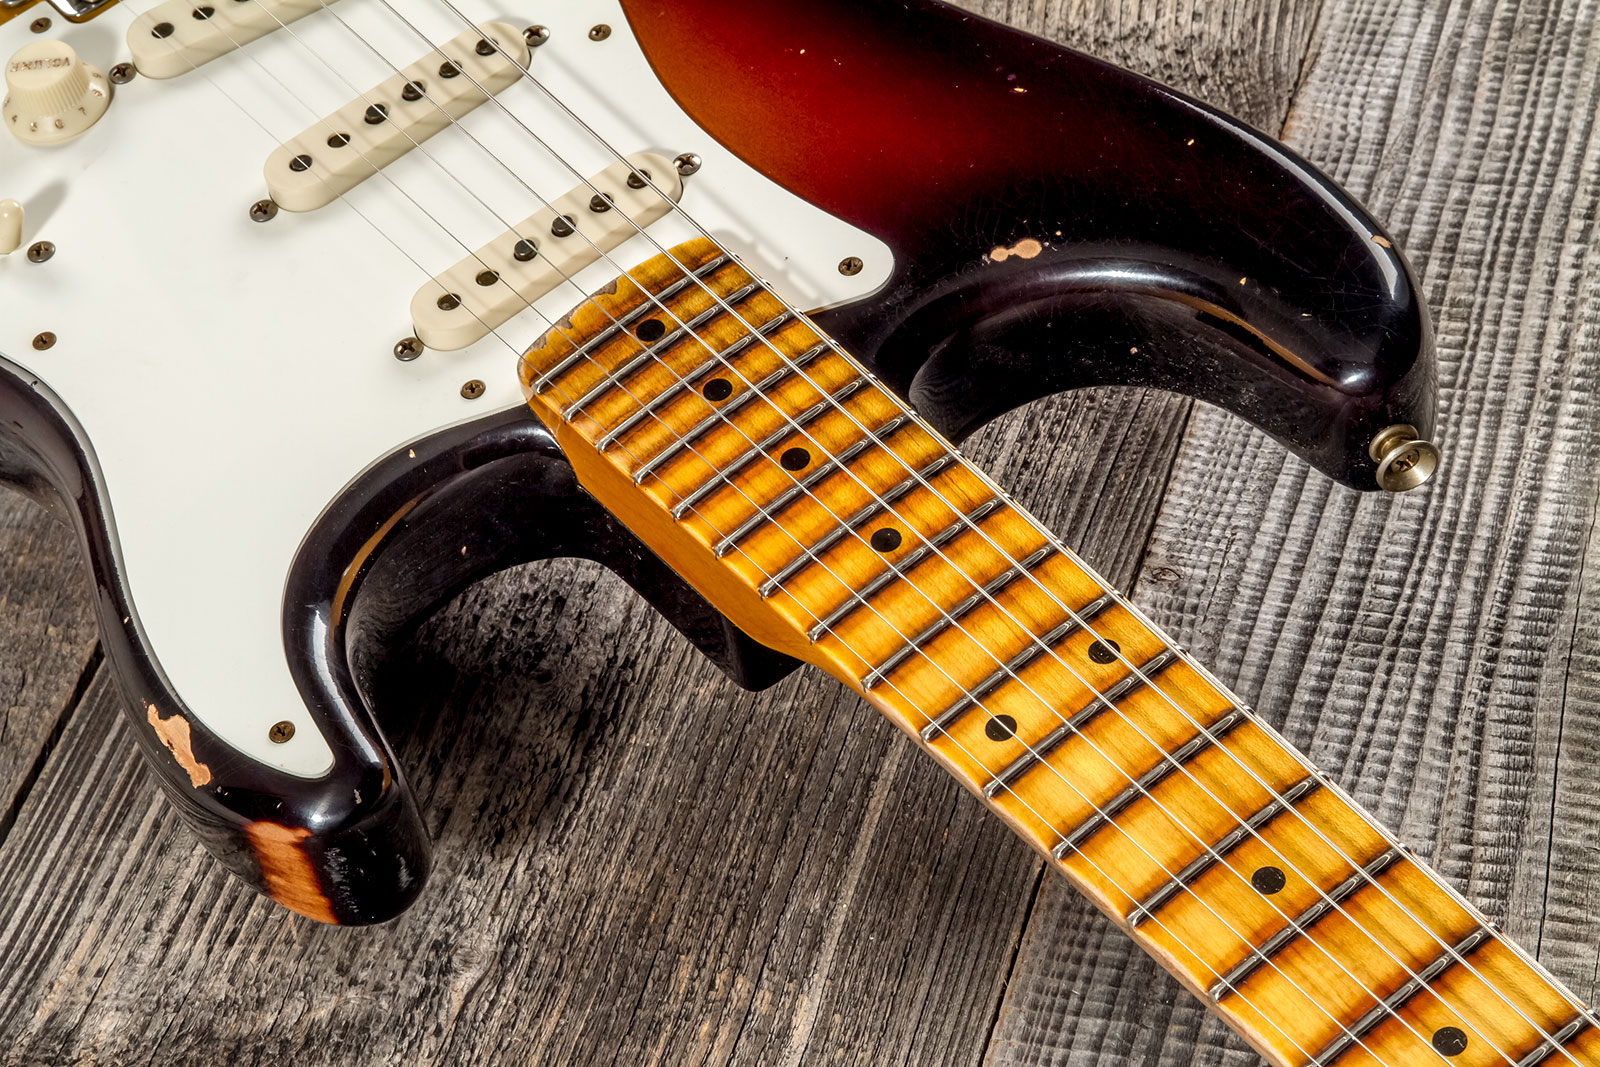 Fender Custom Shop Strat 1957 3s Trem Mn #cz575421 - Relic 2-color Sunburst - E-Gitarre in Str-Form - Variation 4